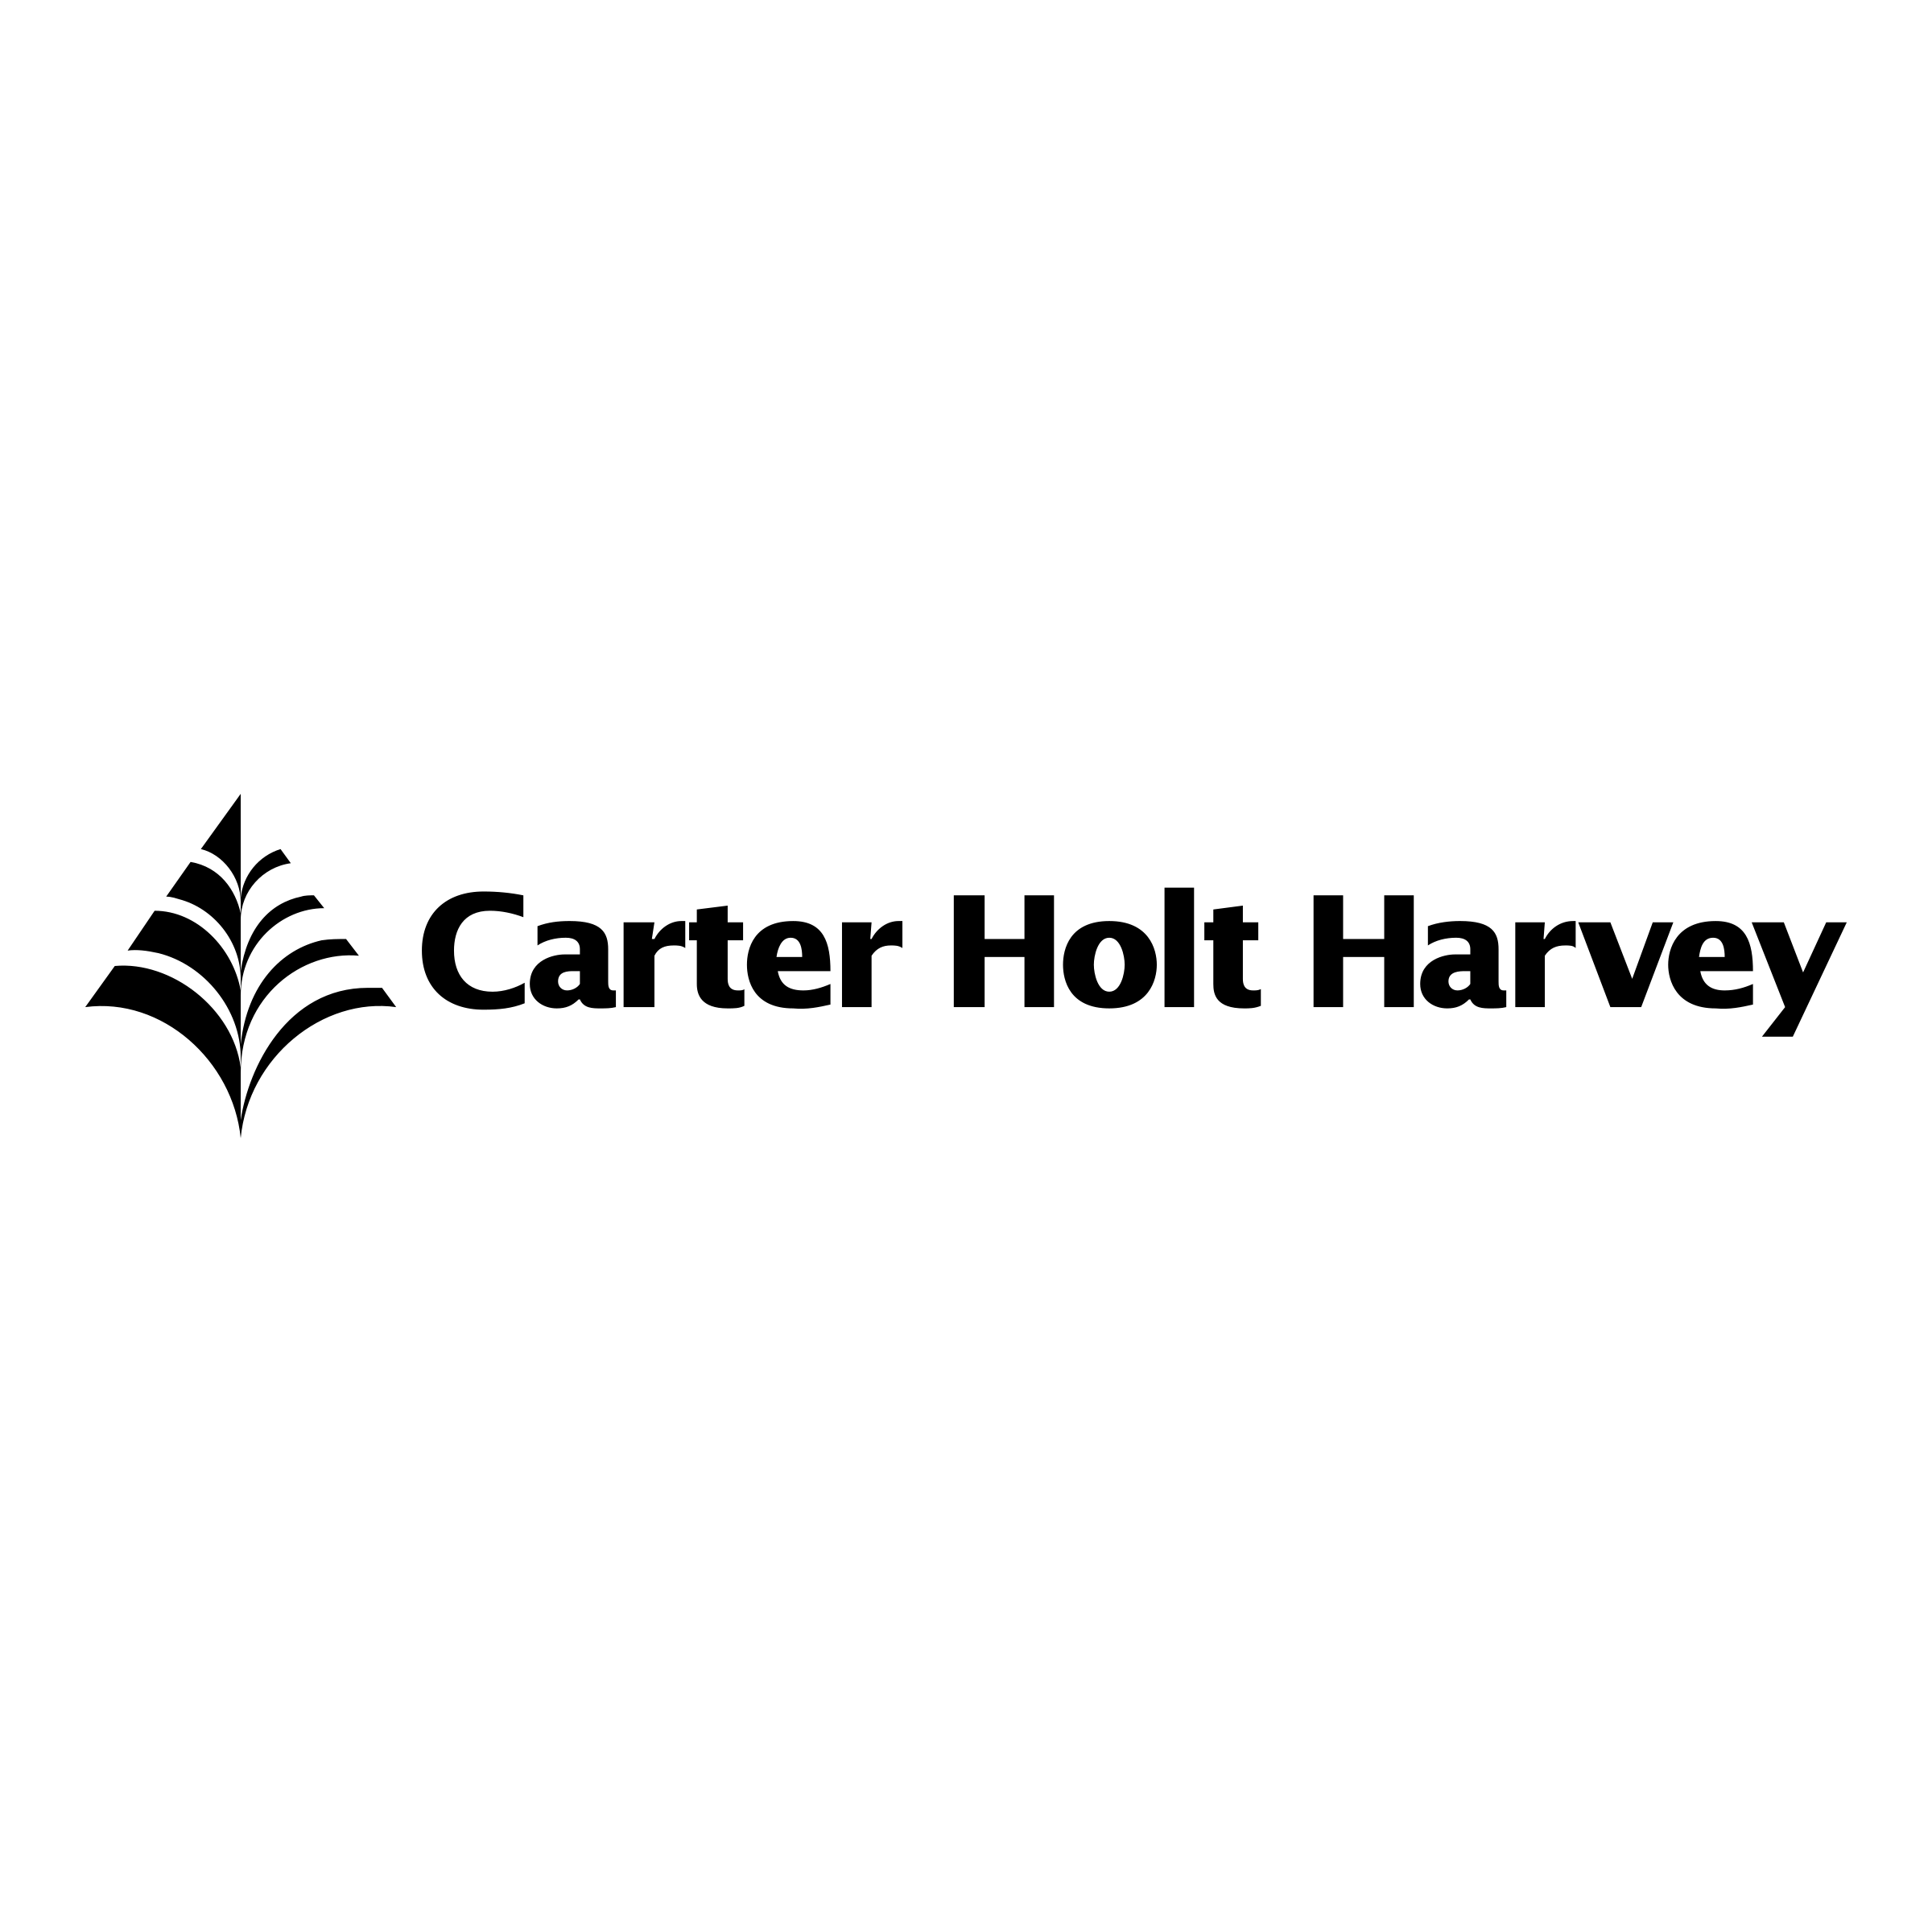 Harvey Logo - Carter Holt Harvey Logo PNG Transparent & SVG Vector - Freebie Supply